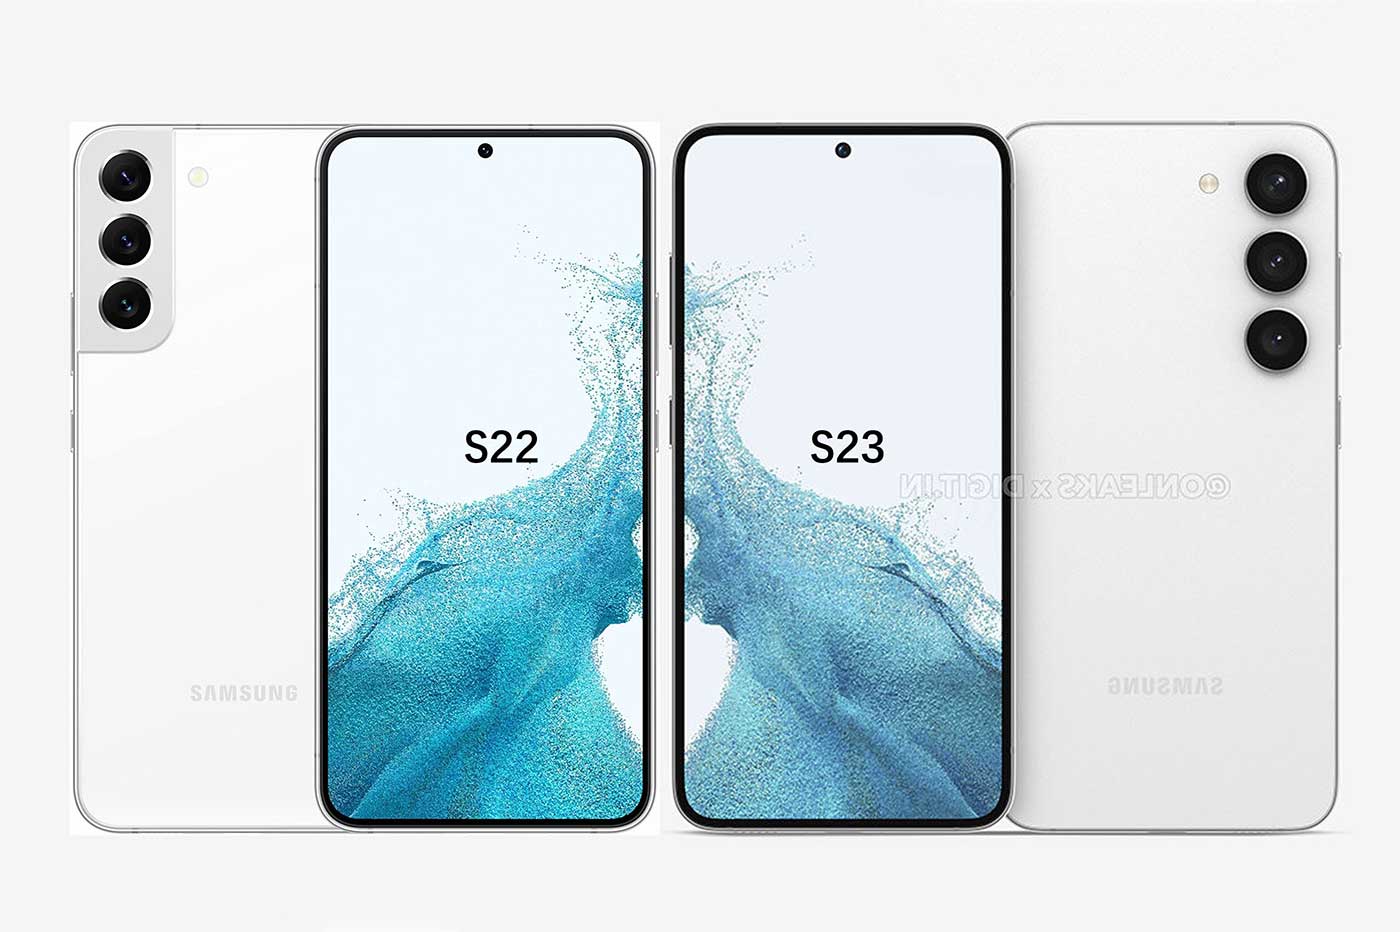 Samsung Galaxy S22 vs Galaxy S23